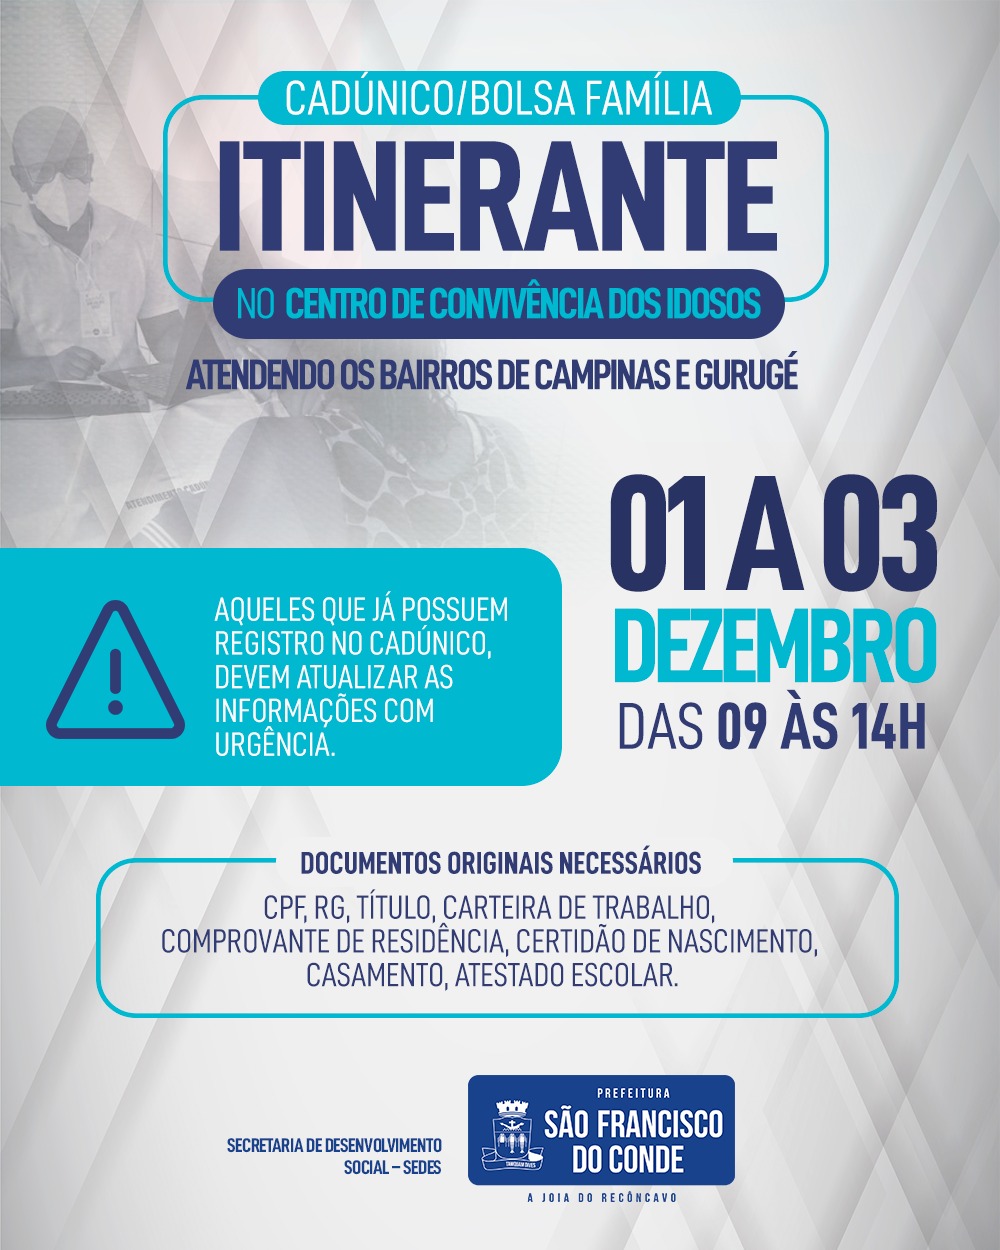 CadÚnico/Bolsa Família Itinerante, em Campinas e Gurugé, dias 01 a 03 de dezembro